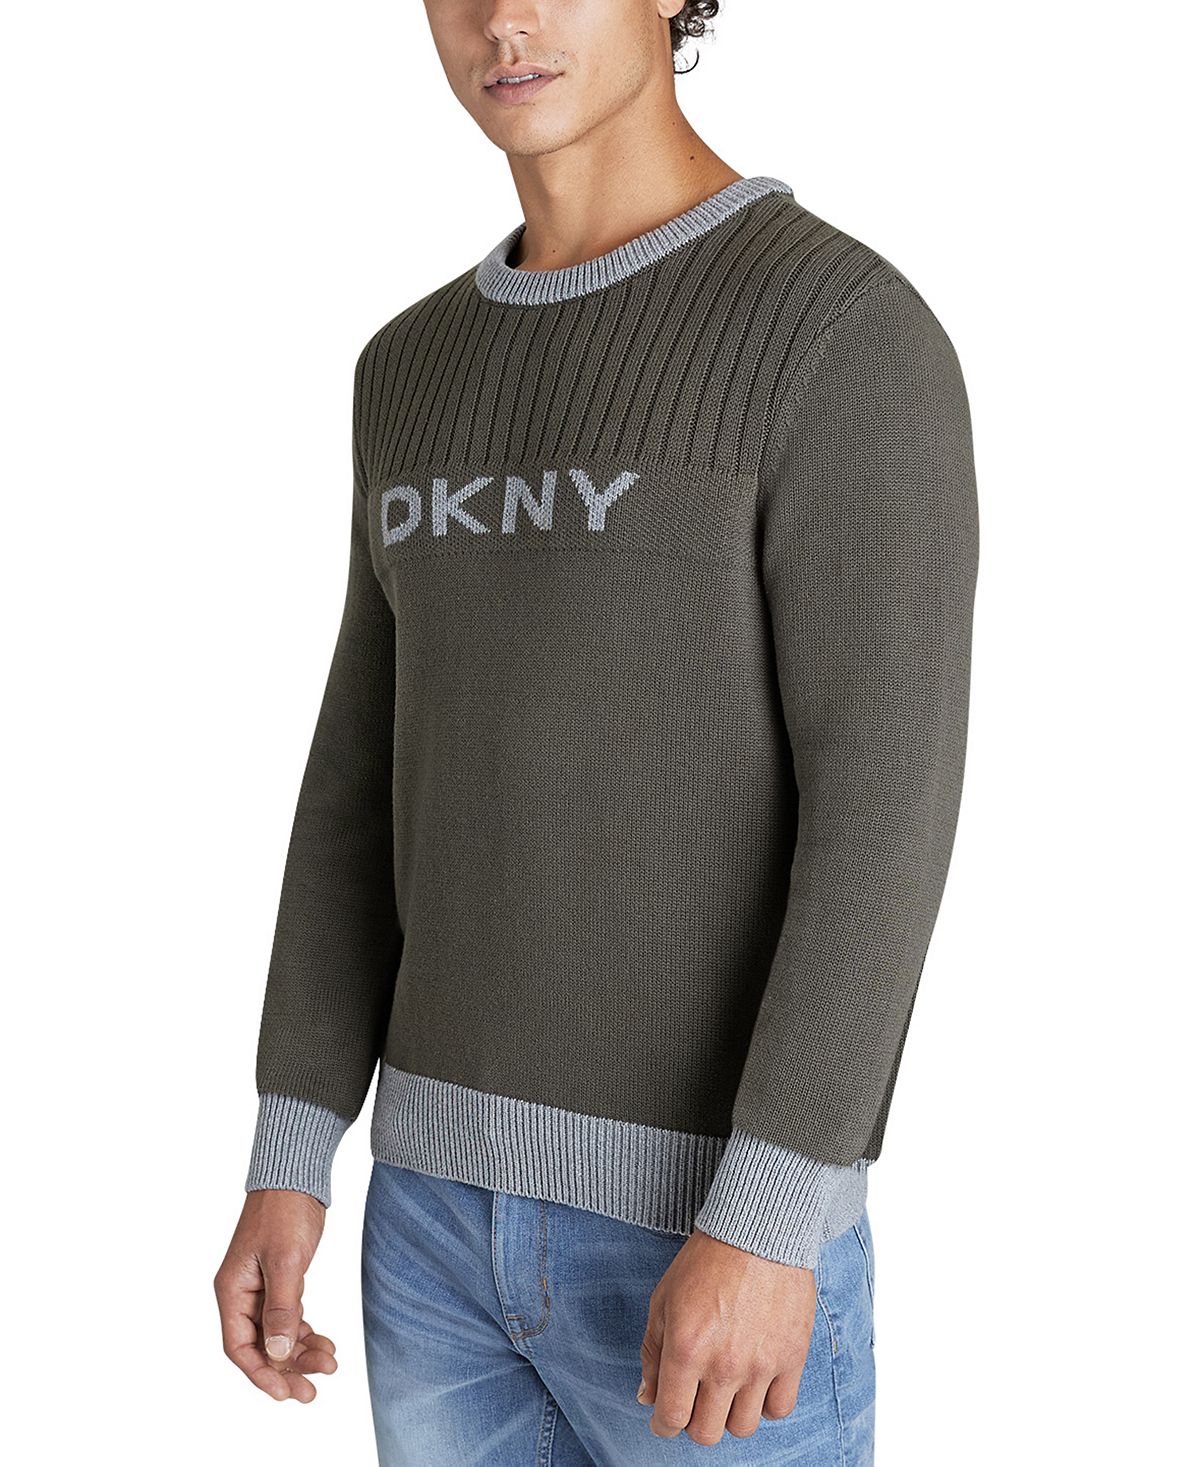 Dkny Logo Sweater Military